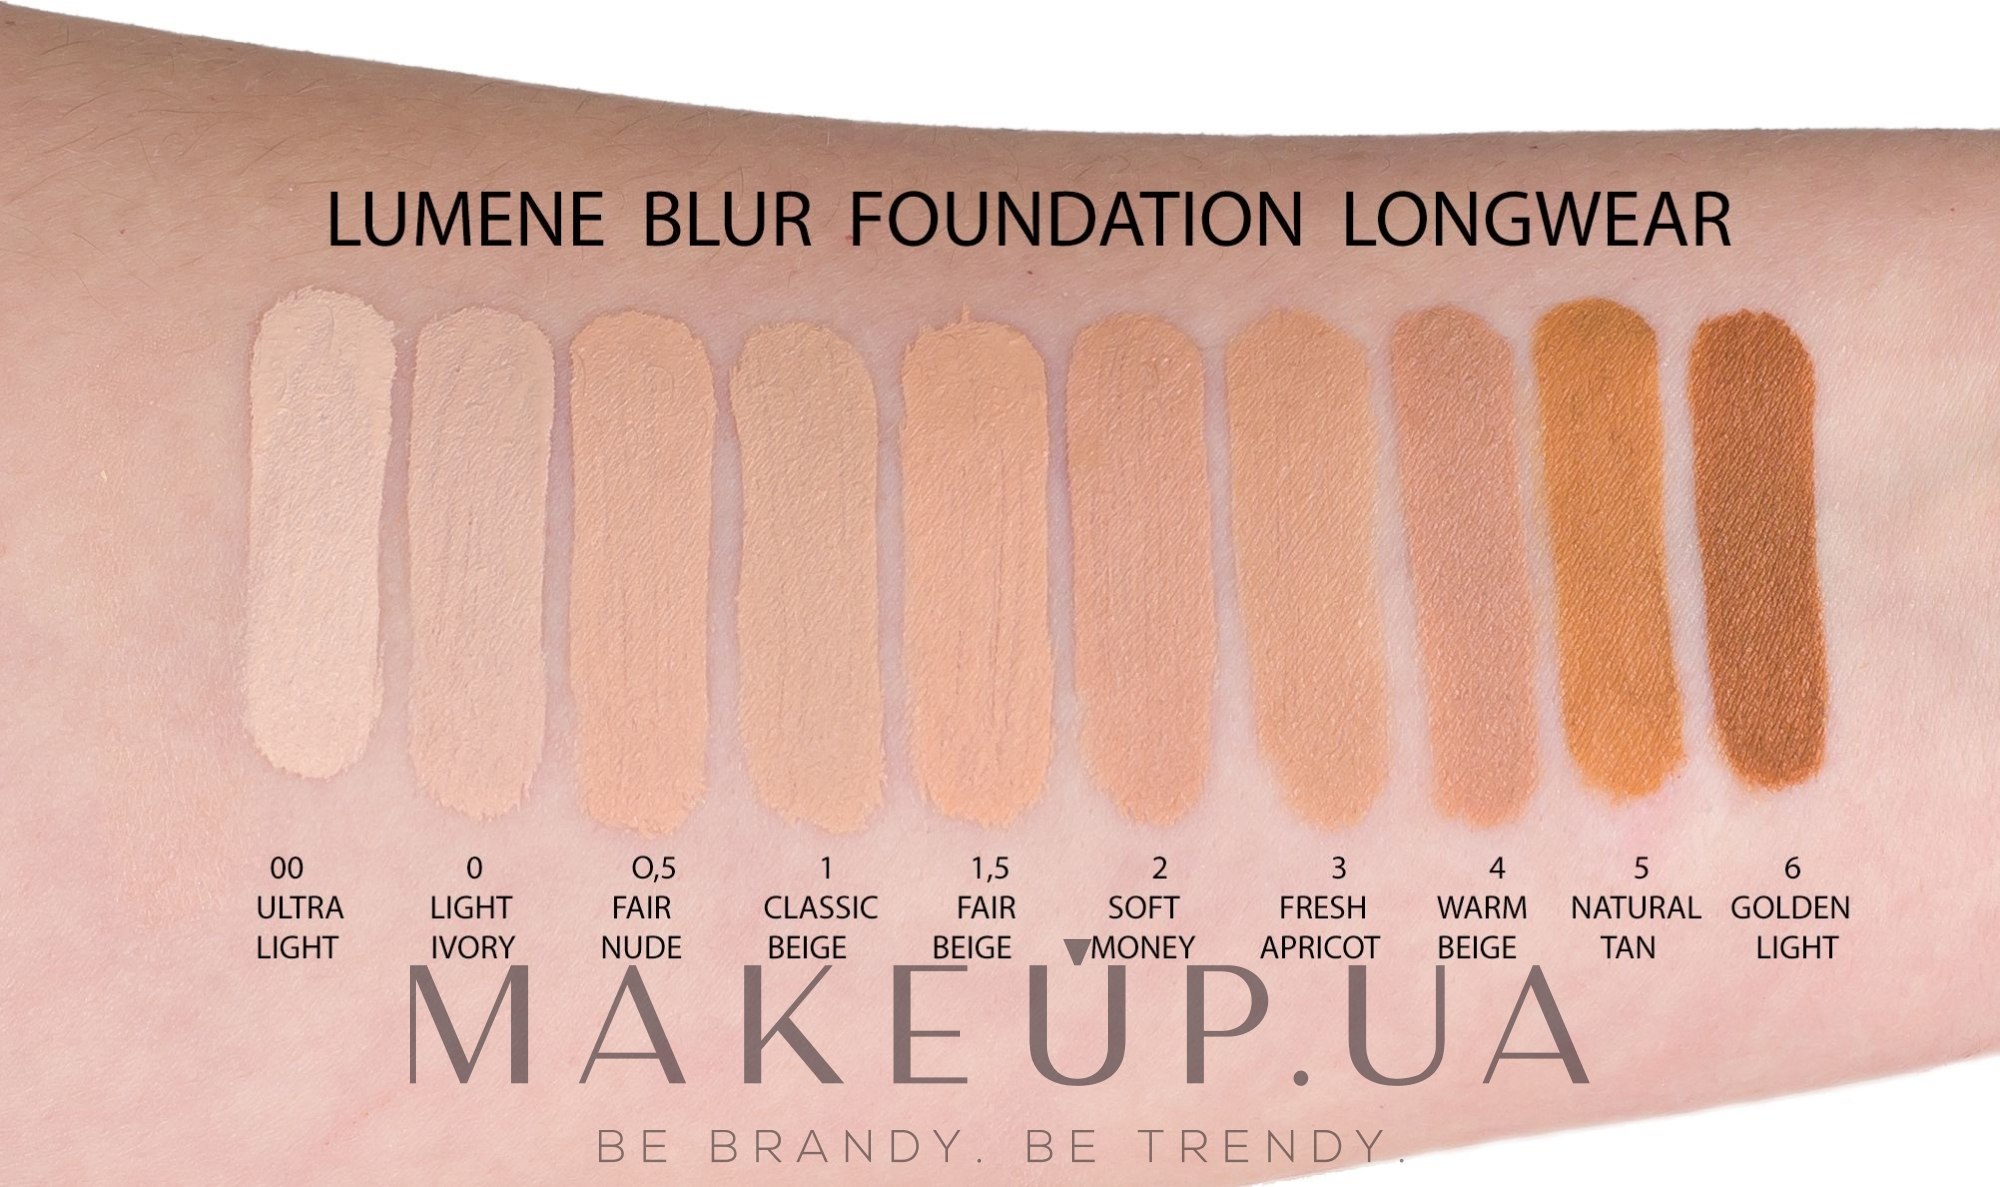 Lumene Blur Foundation - тональная основа SPF15: по лучшей цене в Украине | Makeup.ua